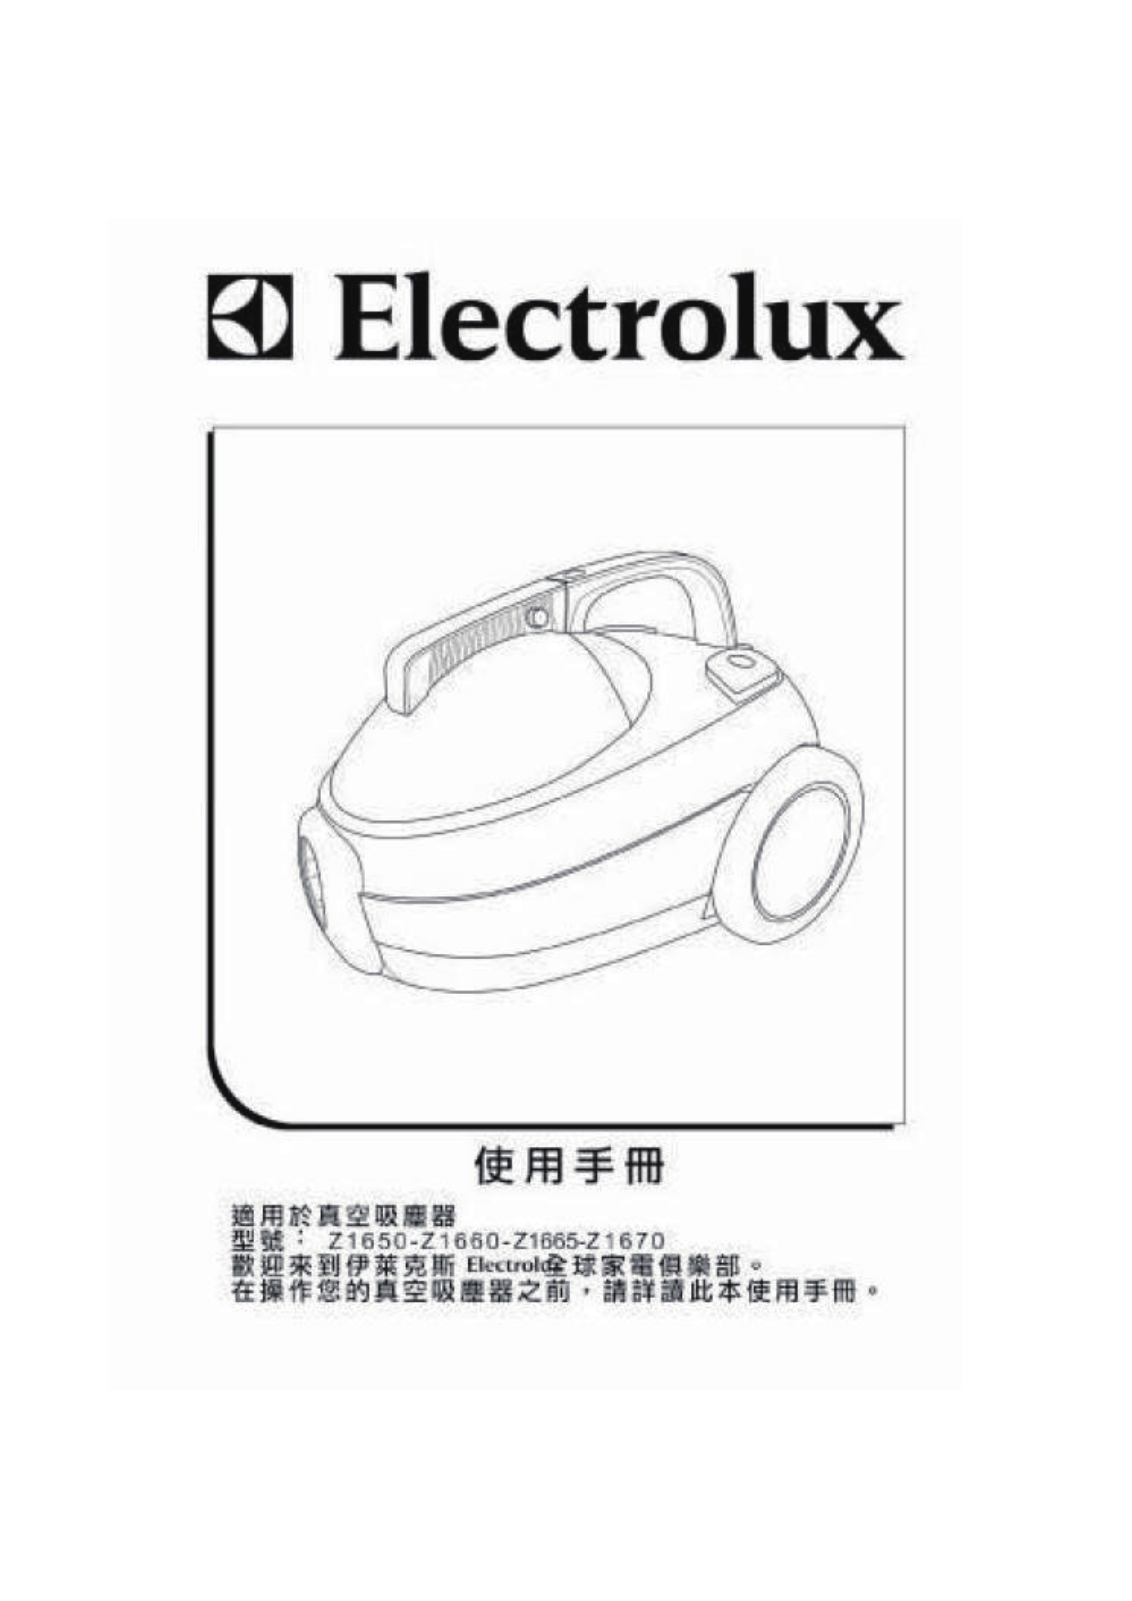 Electrolux Z1650, Z1660, Z1665, Z1670 User Manual